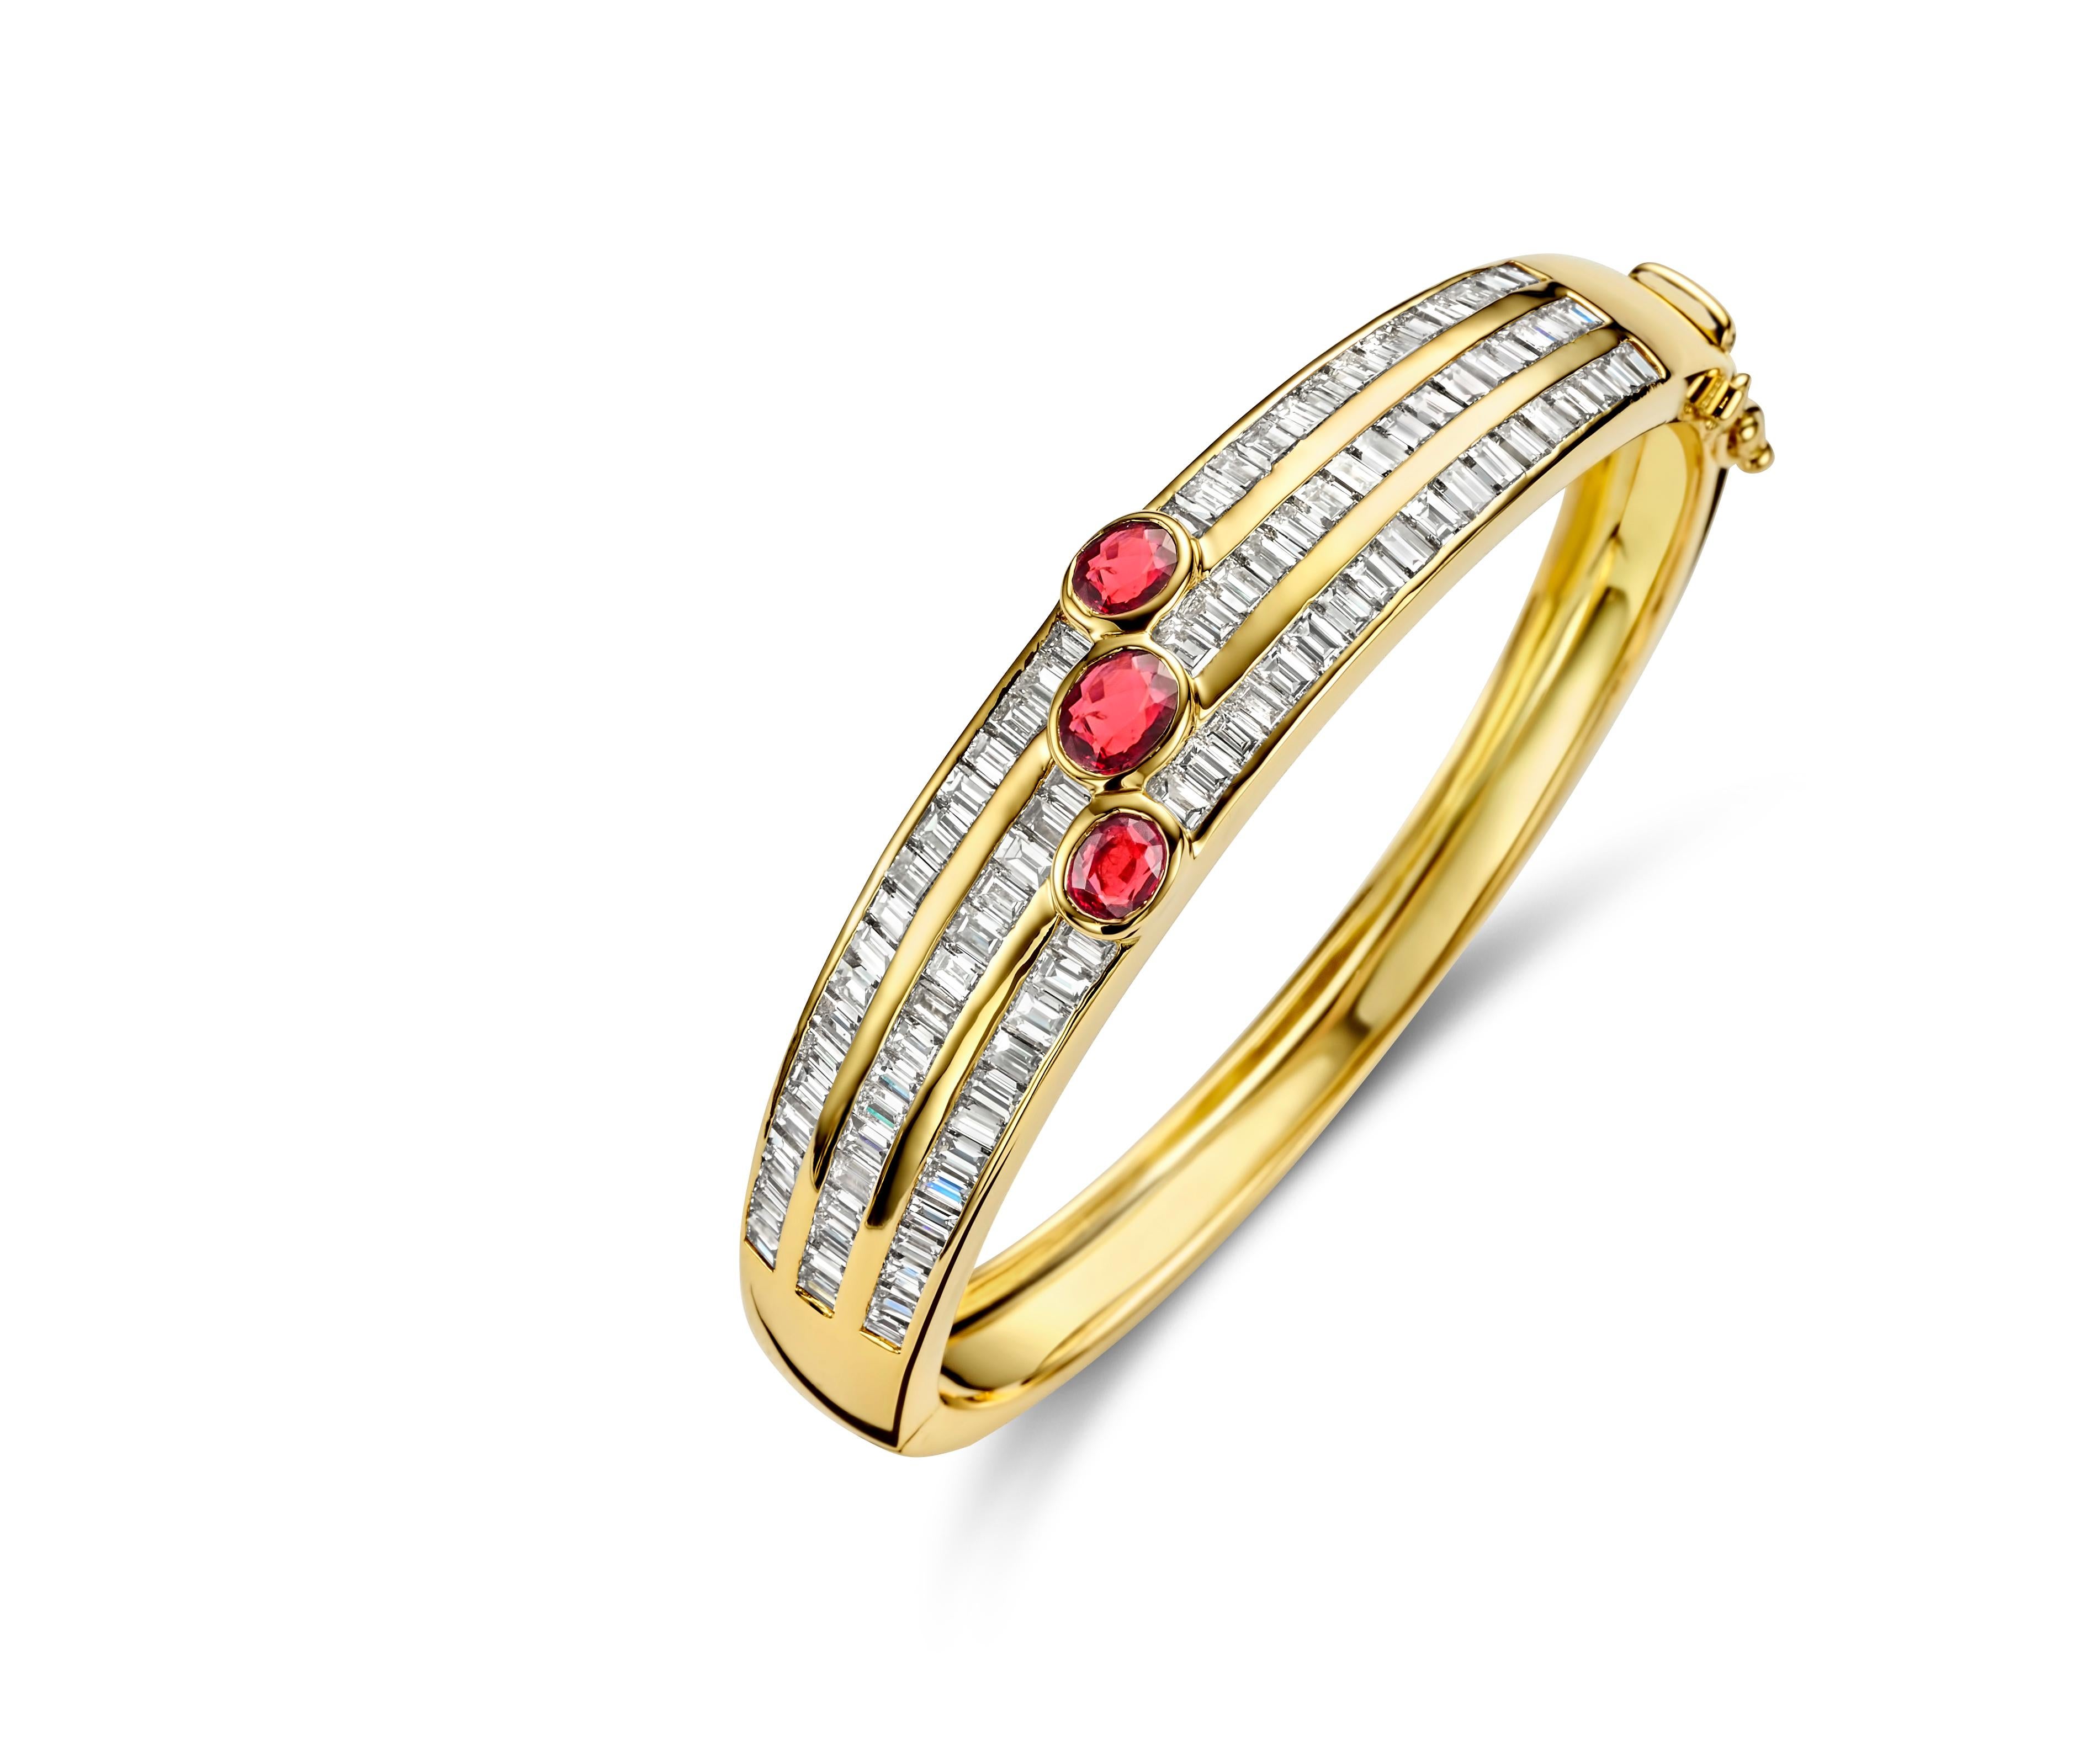 Adler Genèva Set of 18kt Matching Bracelet + Ring + Earrings, Total 11.48 Ct Diamonds

Bague
Diamants : Taille baguette, environ 2,52 ct.
Rubis : 3 rubis de taille ovale
MATERIAL : Or jaune 18 carats
Taille de la bague : 51 EU / 5.75 US ( Can be